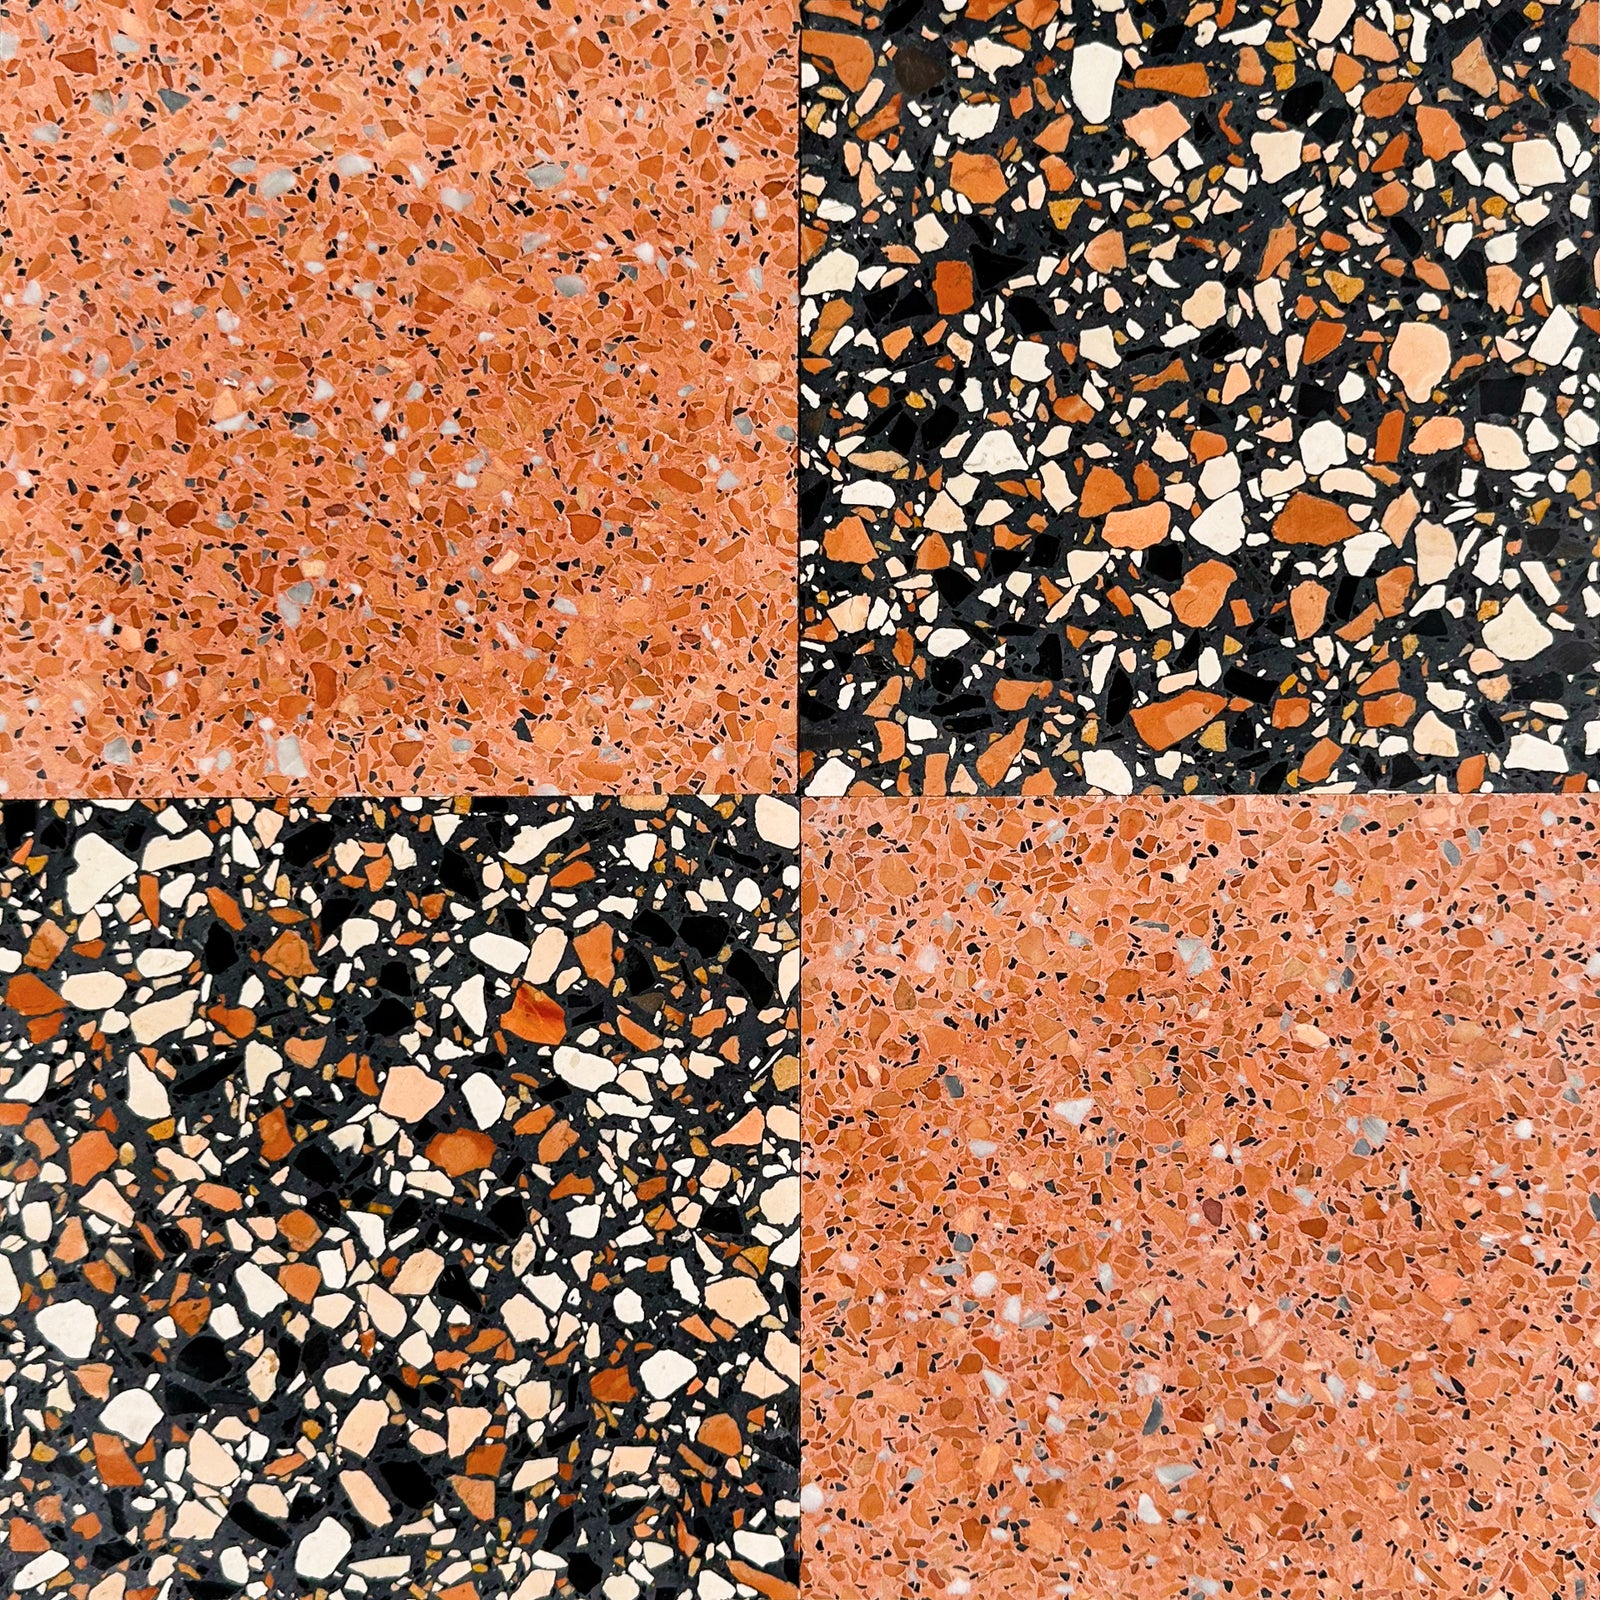 Checkers Ponza Black and Stromboli 16x16 Terrazzo Tile